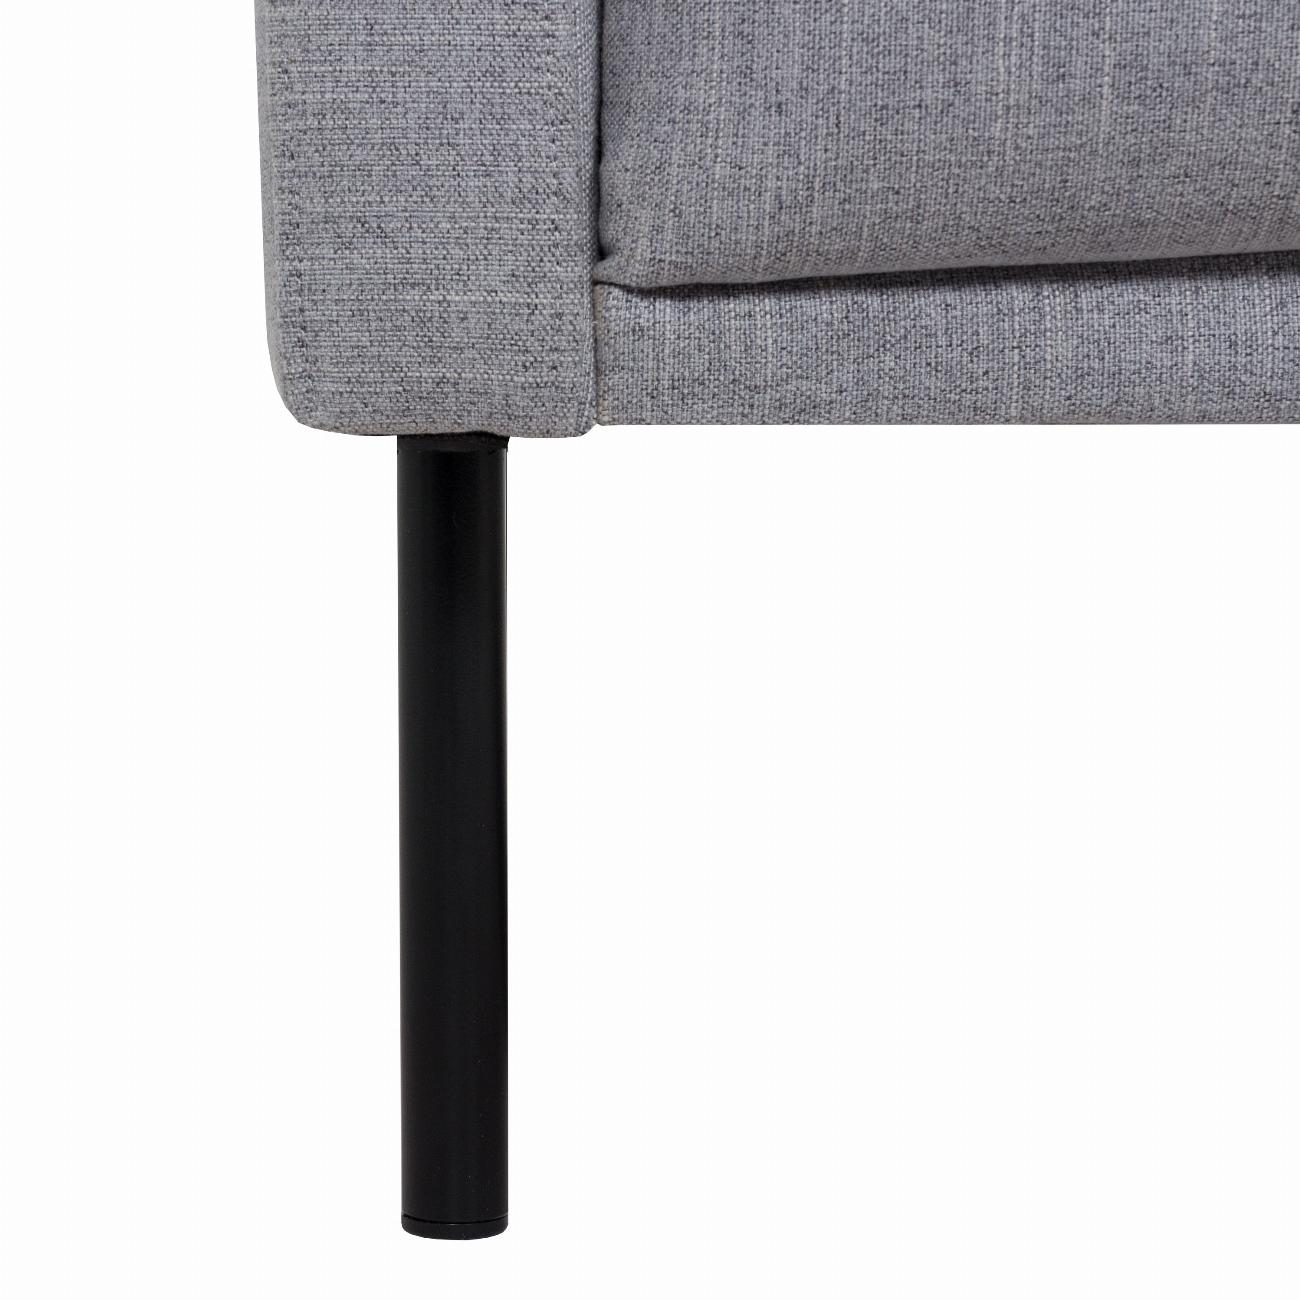 Larvik 2.5 Seater Sofa - Grey, Black Legs